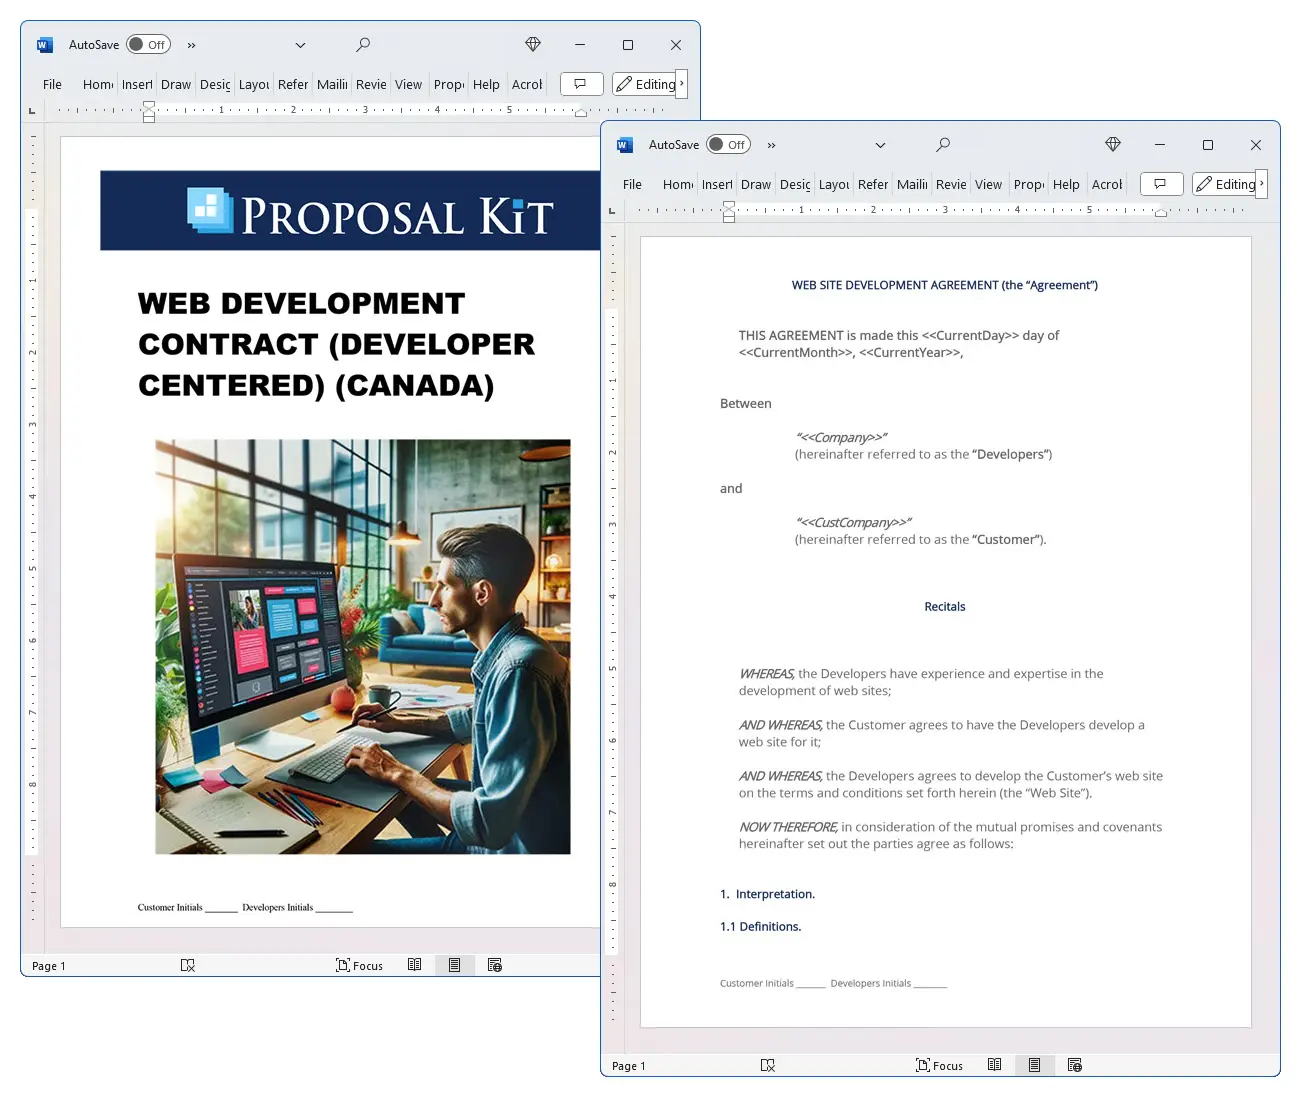 Web Development Contract (Developer Centered) (Canada) Concepts